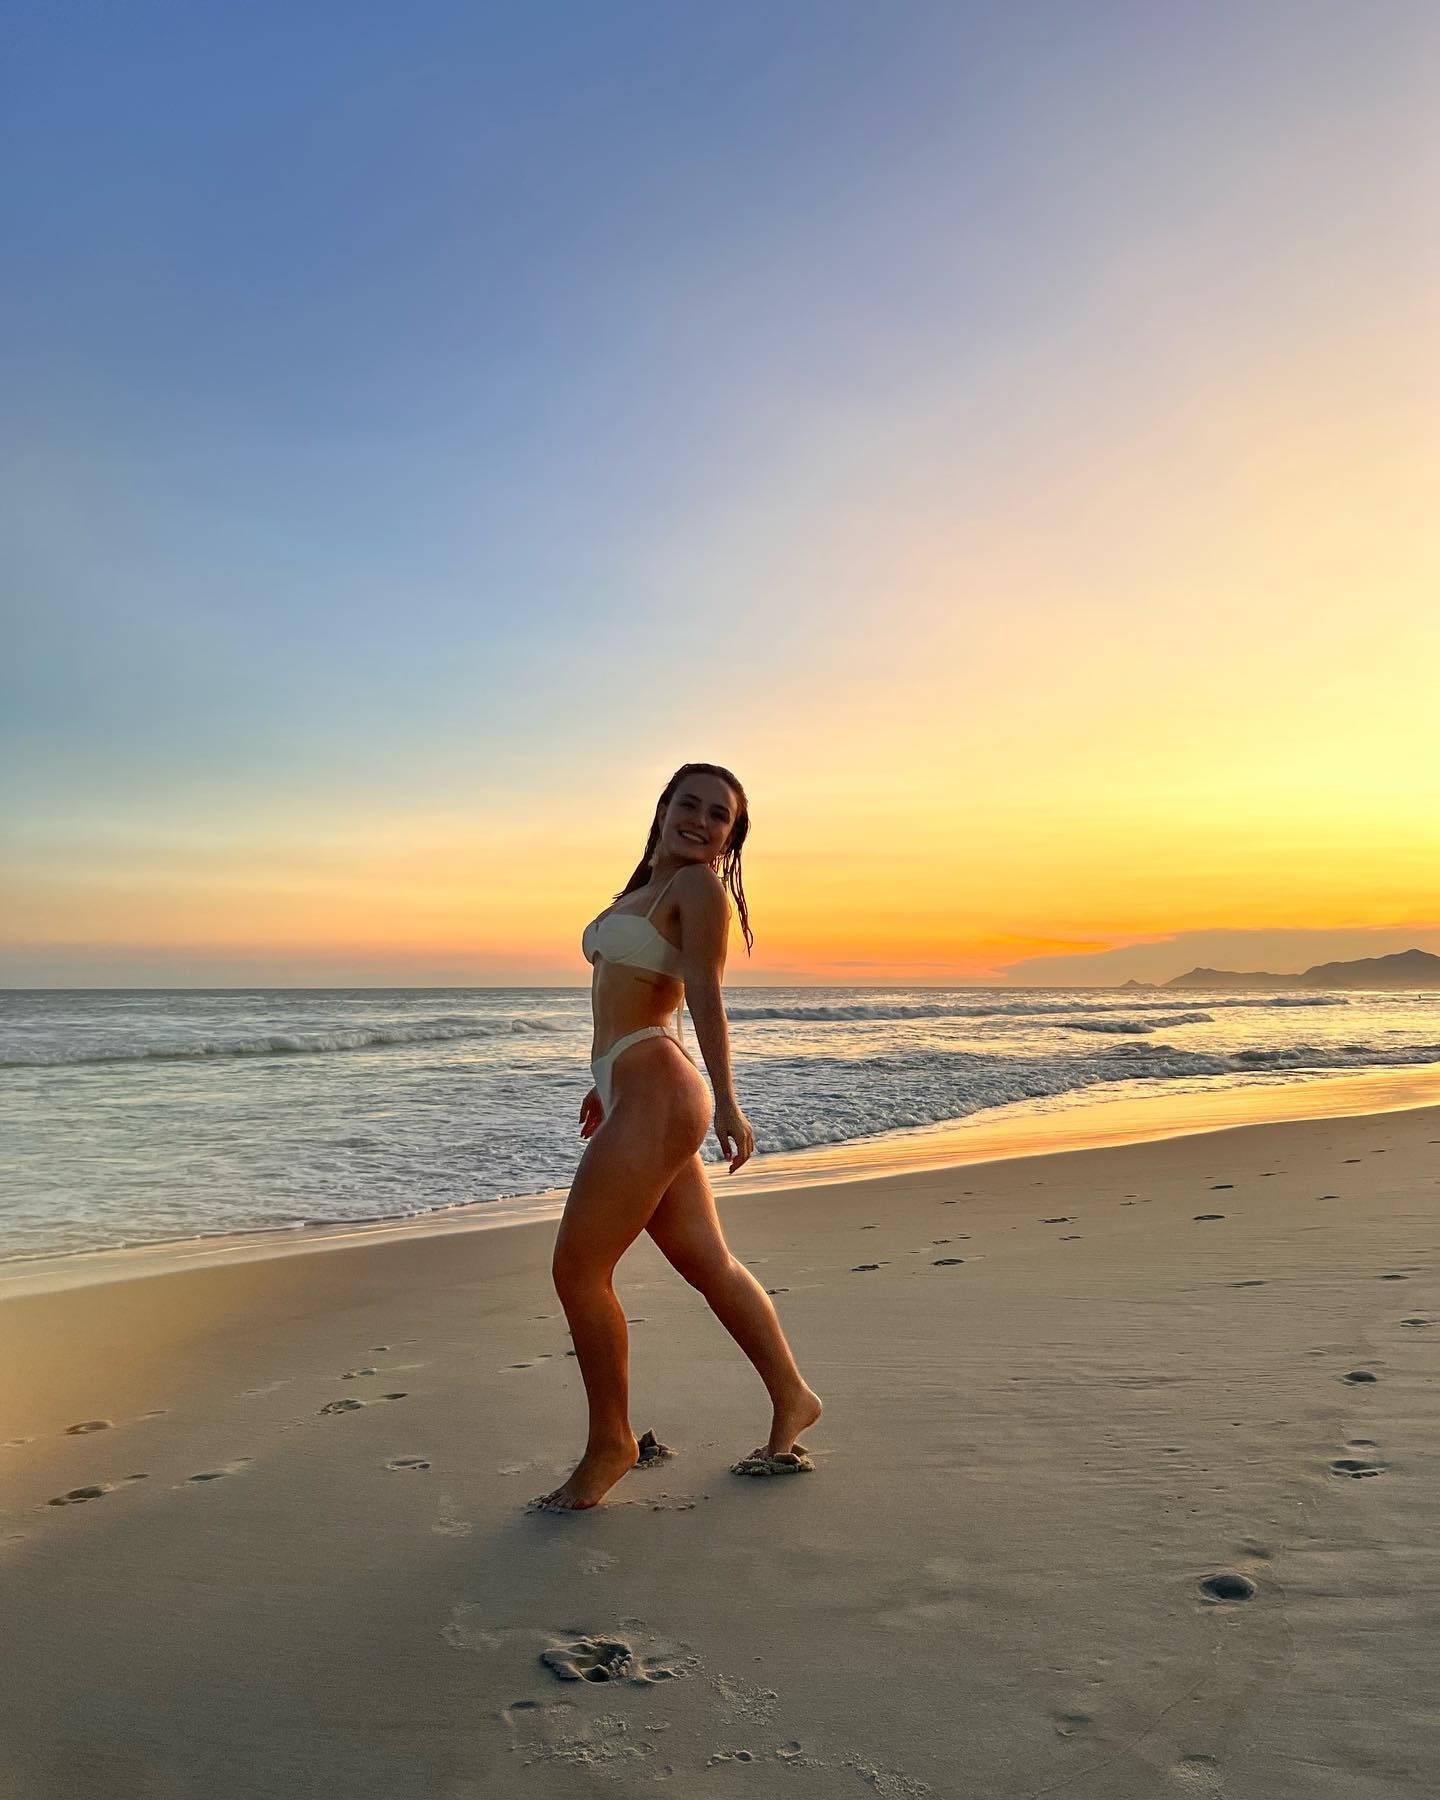 Larissa Manoela posa de biquíni em praia do Rio de Janeiro: 'Mar doce lar' (Foto: Reprodução / Instagram)